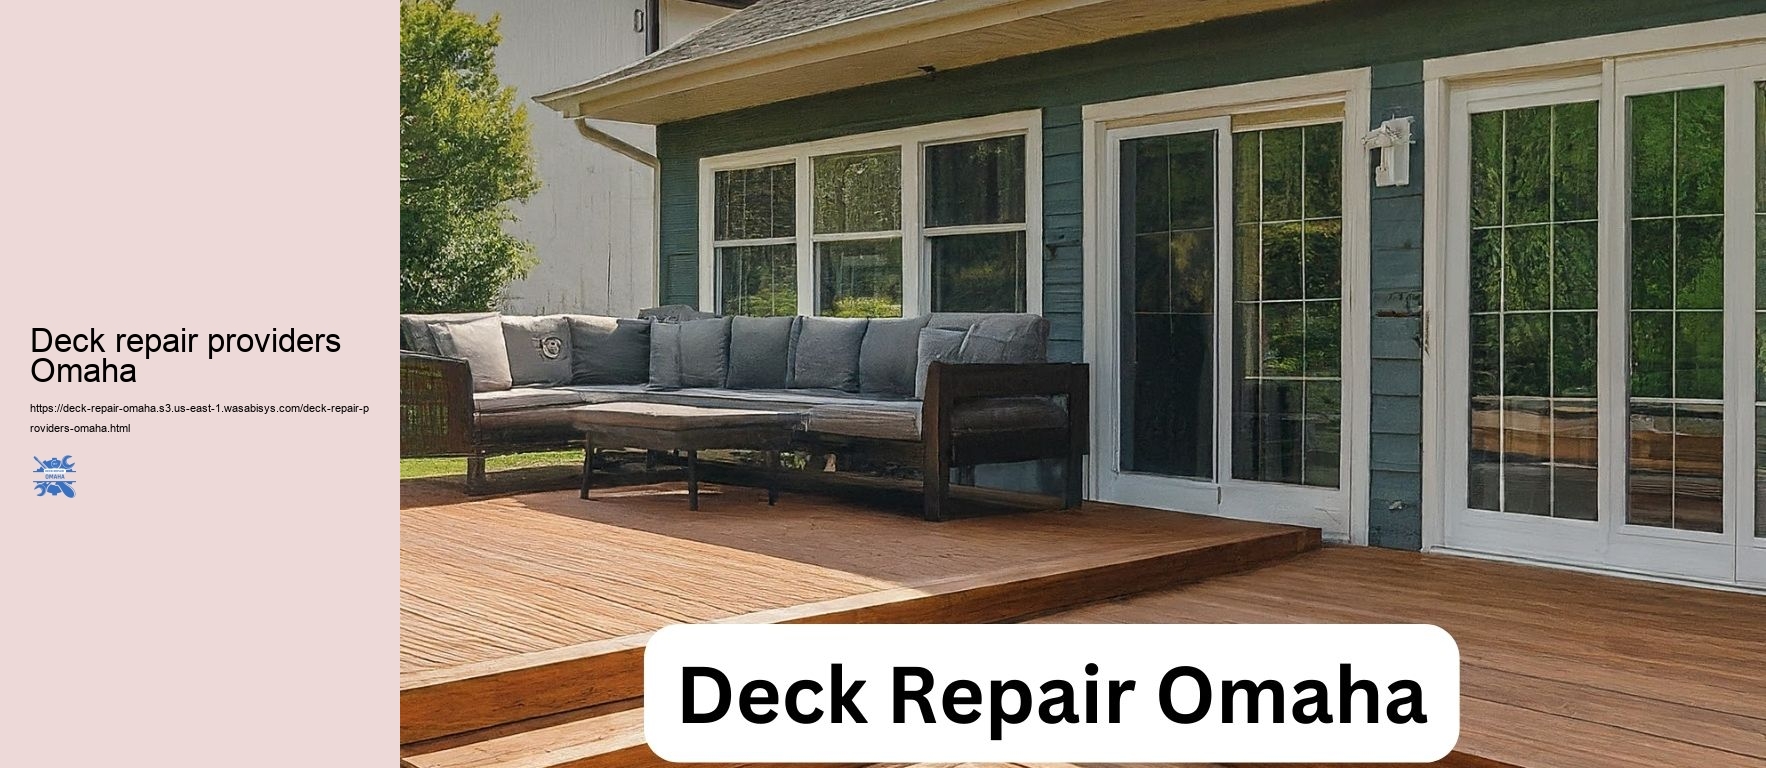 Deck repair providers Omaha